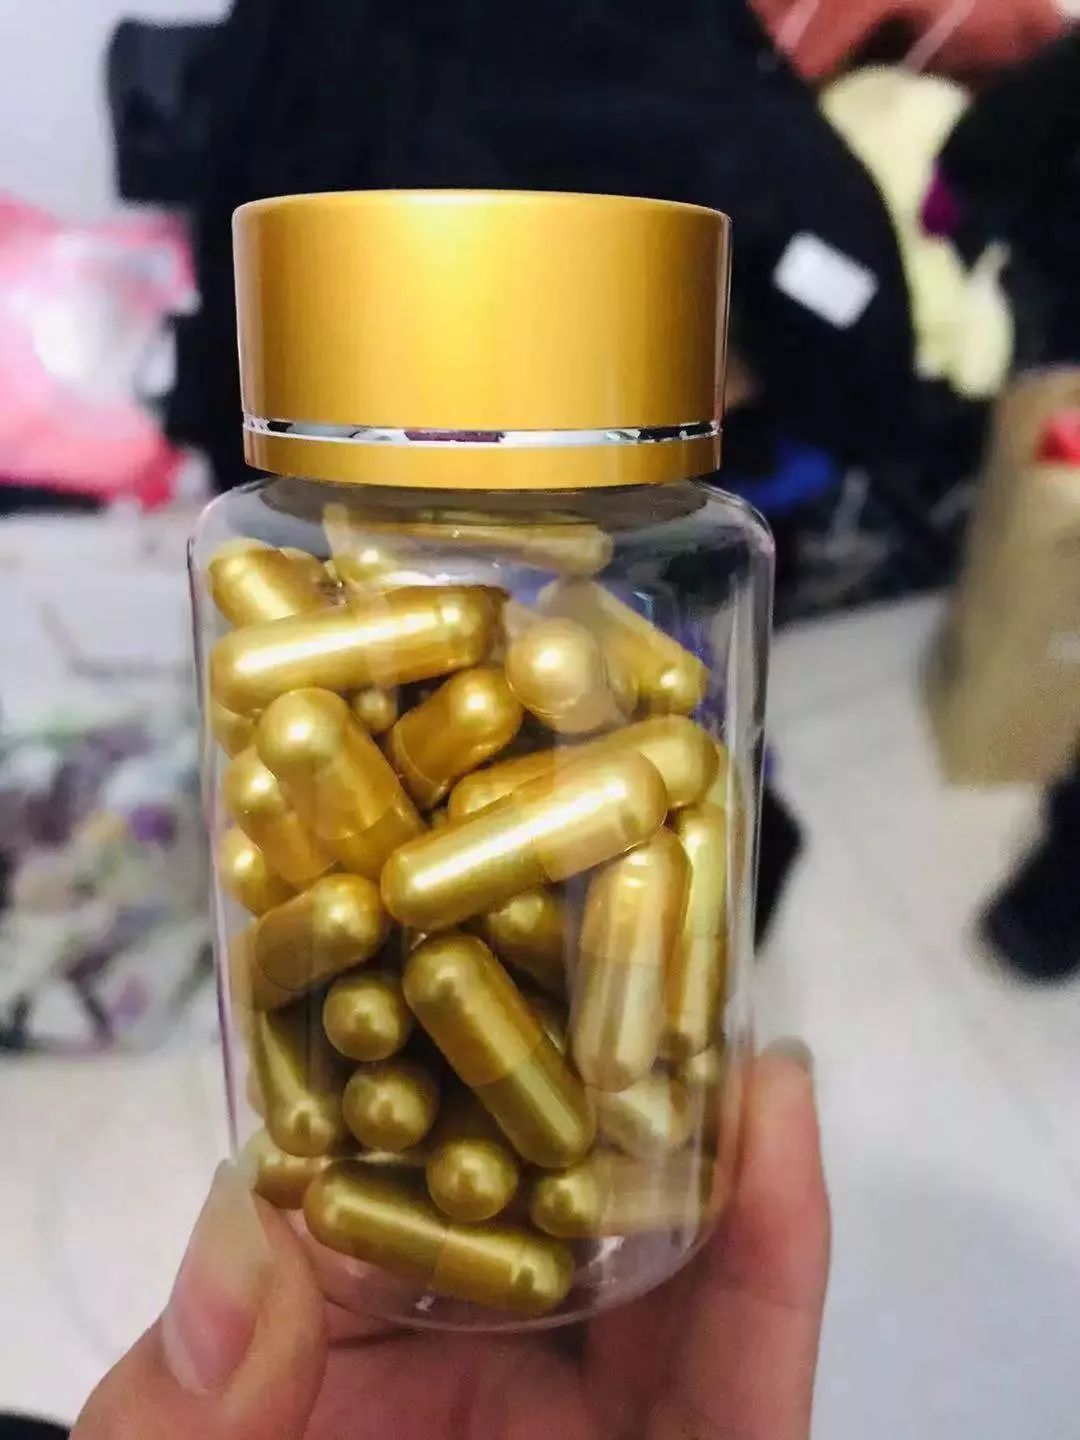 孔某就在微信朋友圈销售这款减肥药,进价是1块多一颗的金色胶囊,装进